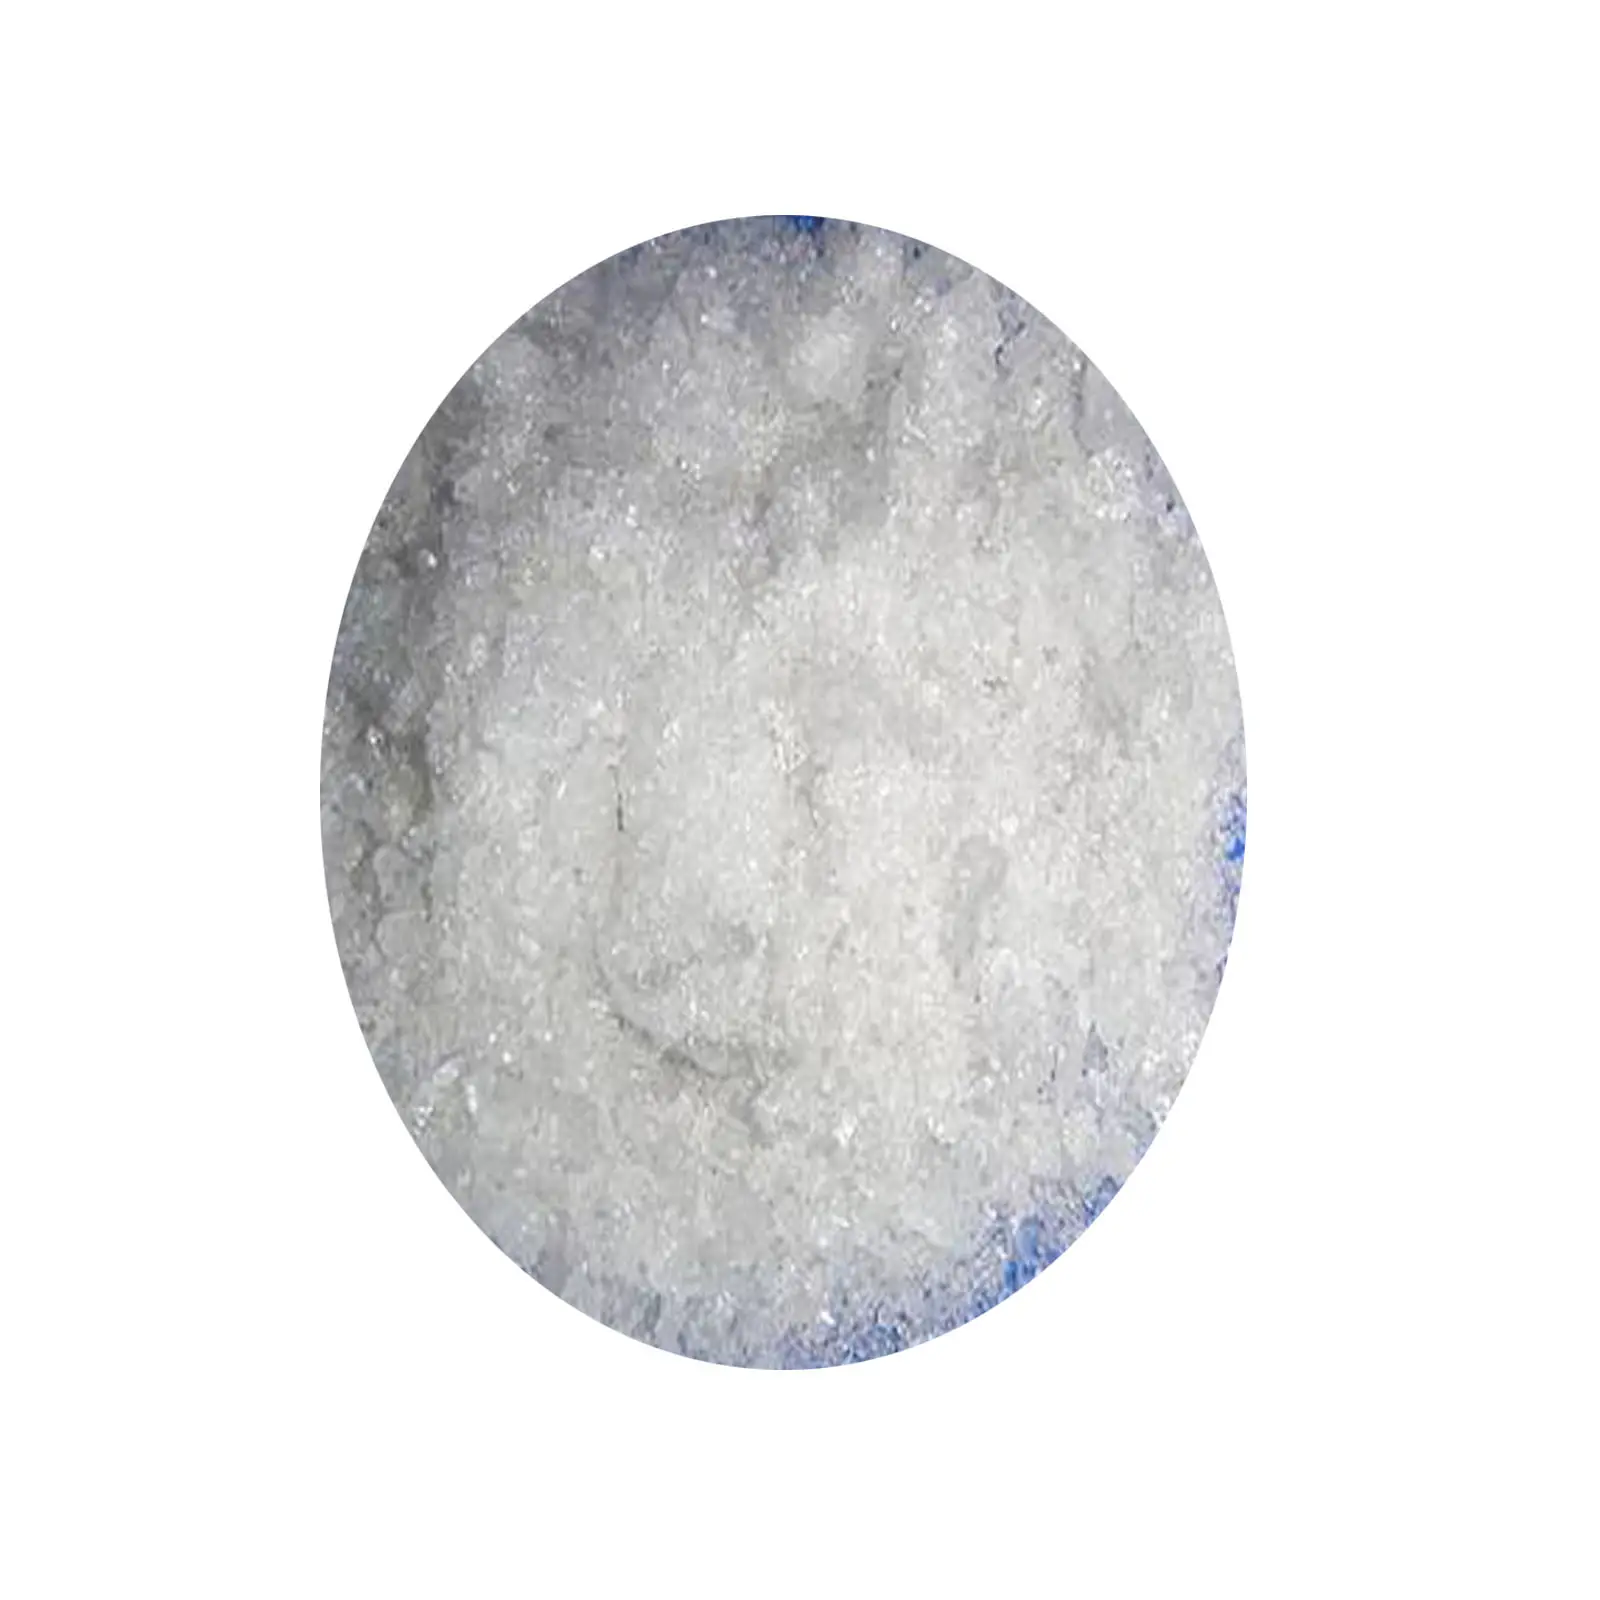 Il nitrato d'argento viene utilizzato nell'industria inorganica per produrre altri sali d'argento